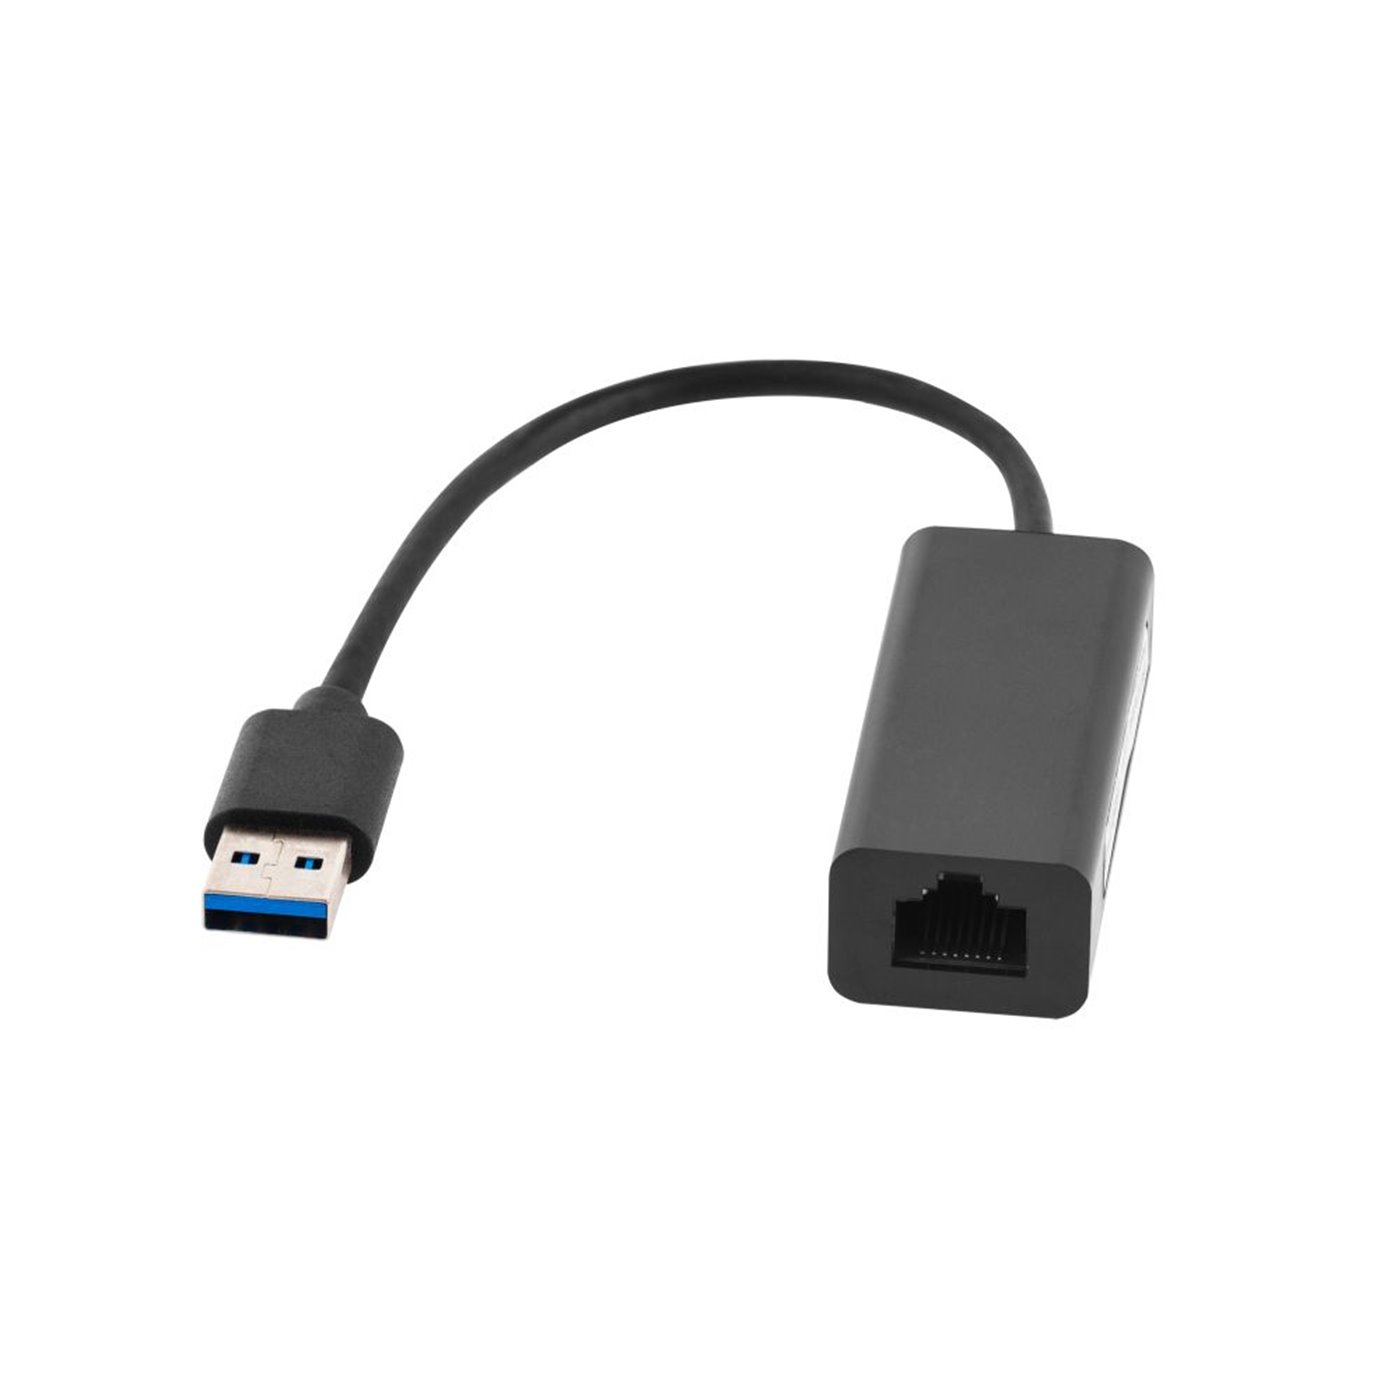 Adaptér sieťová karta USB3 - RJ45 LAN gigabit